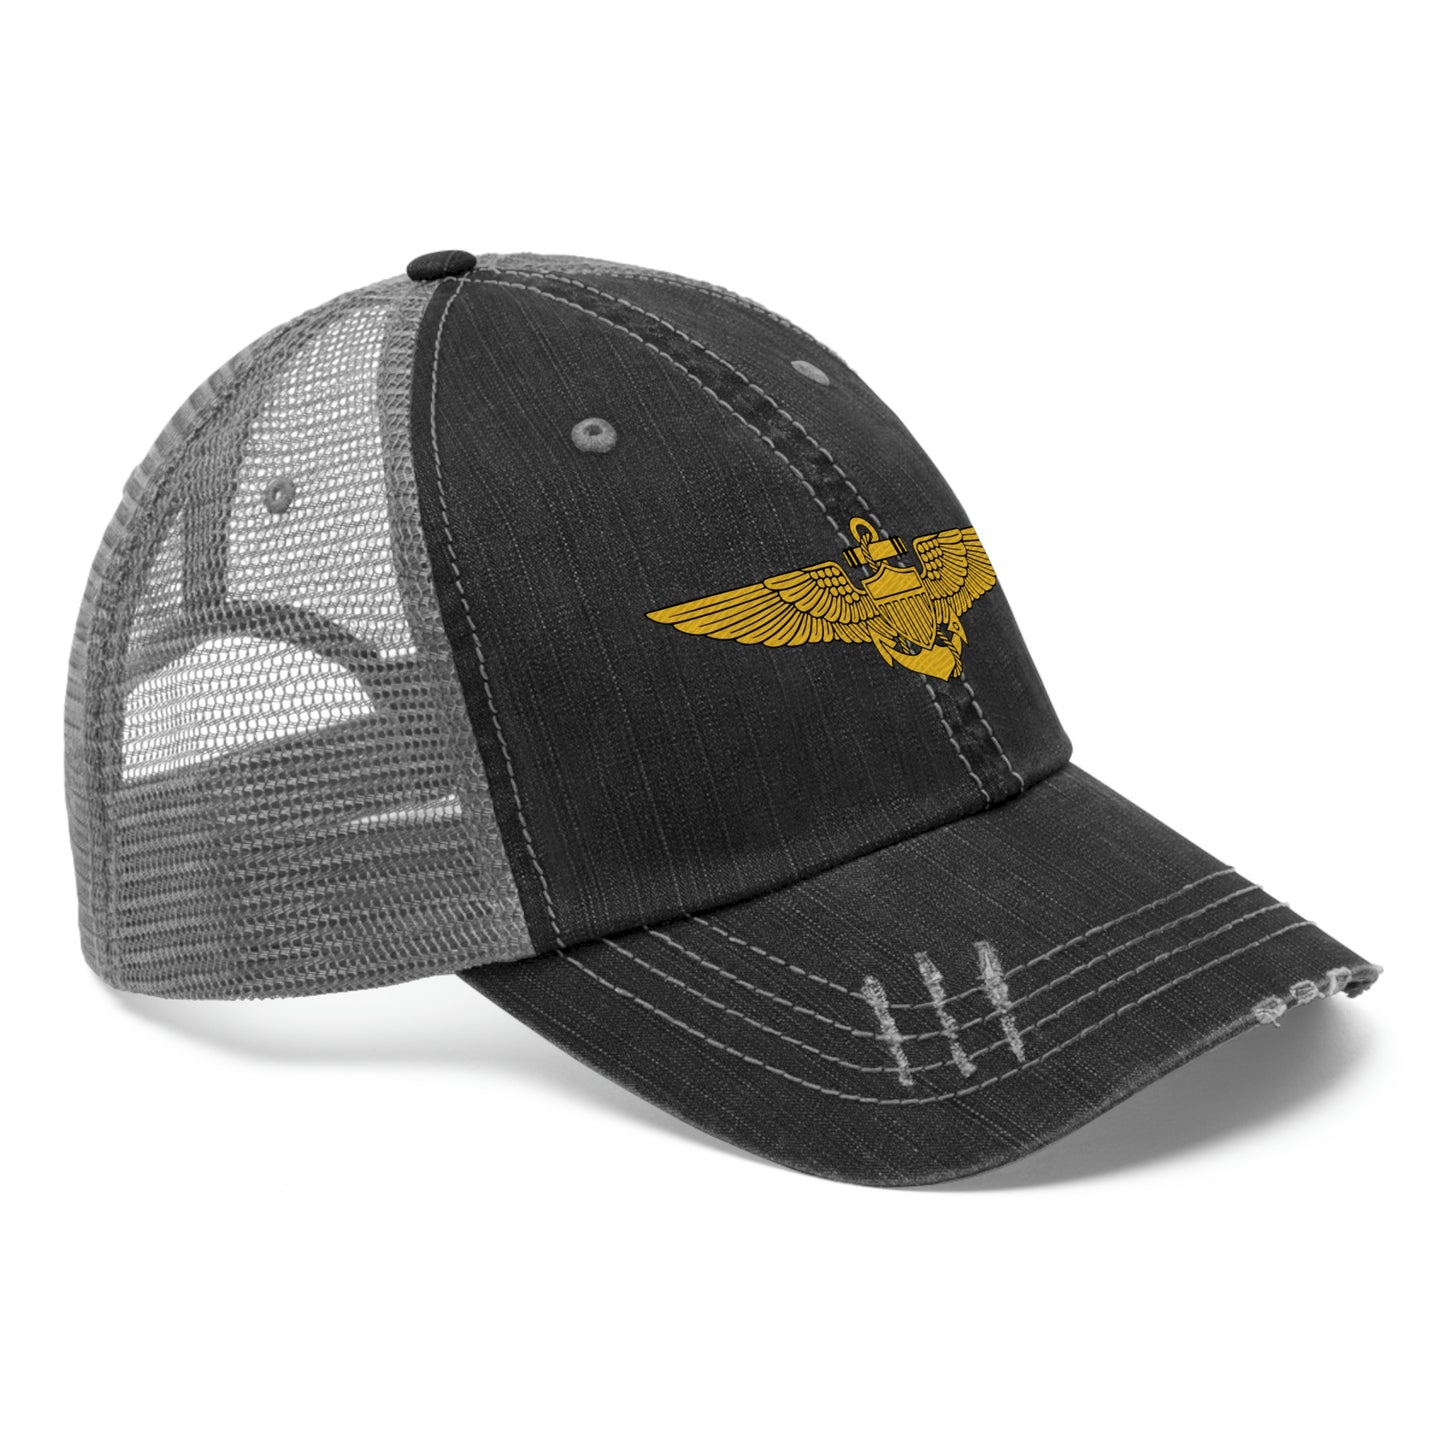 Naval Aviator Wings Trucker Hat